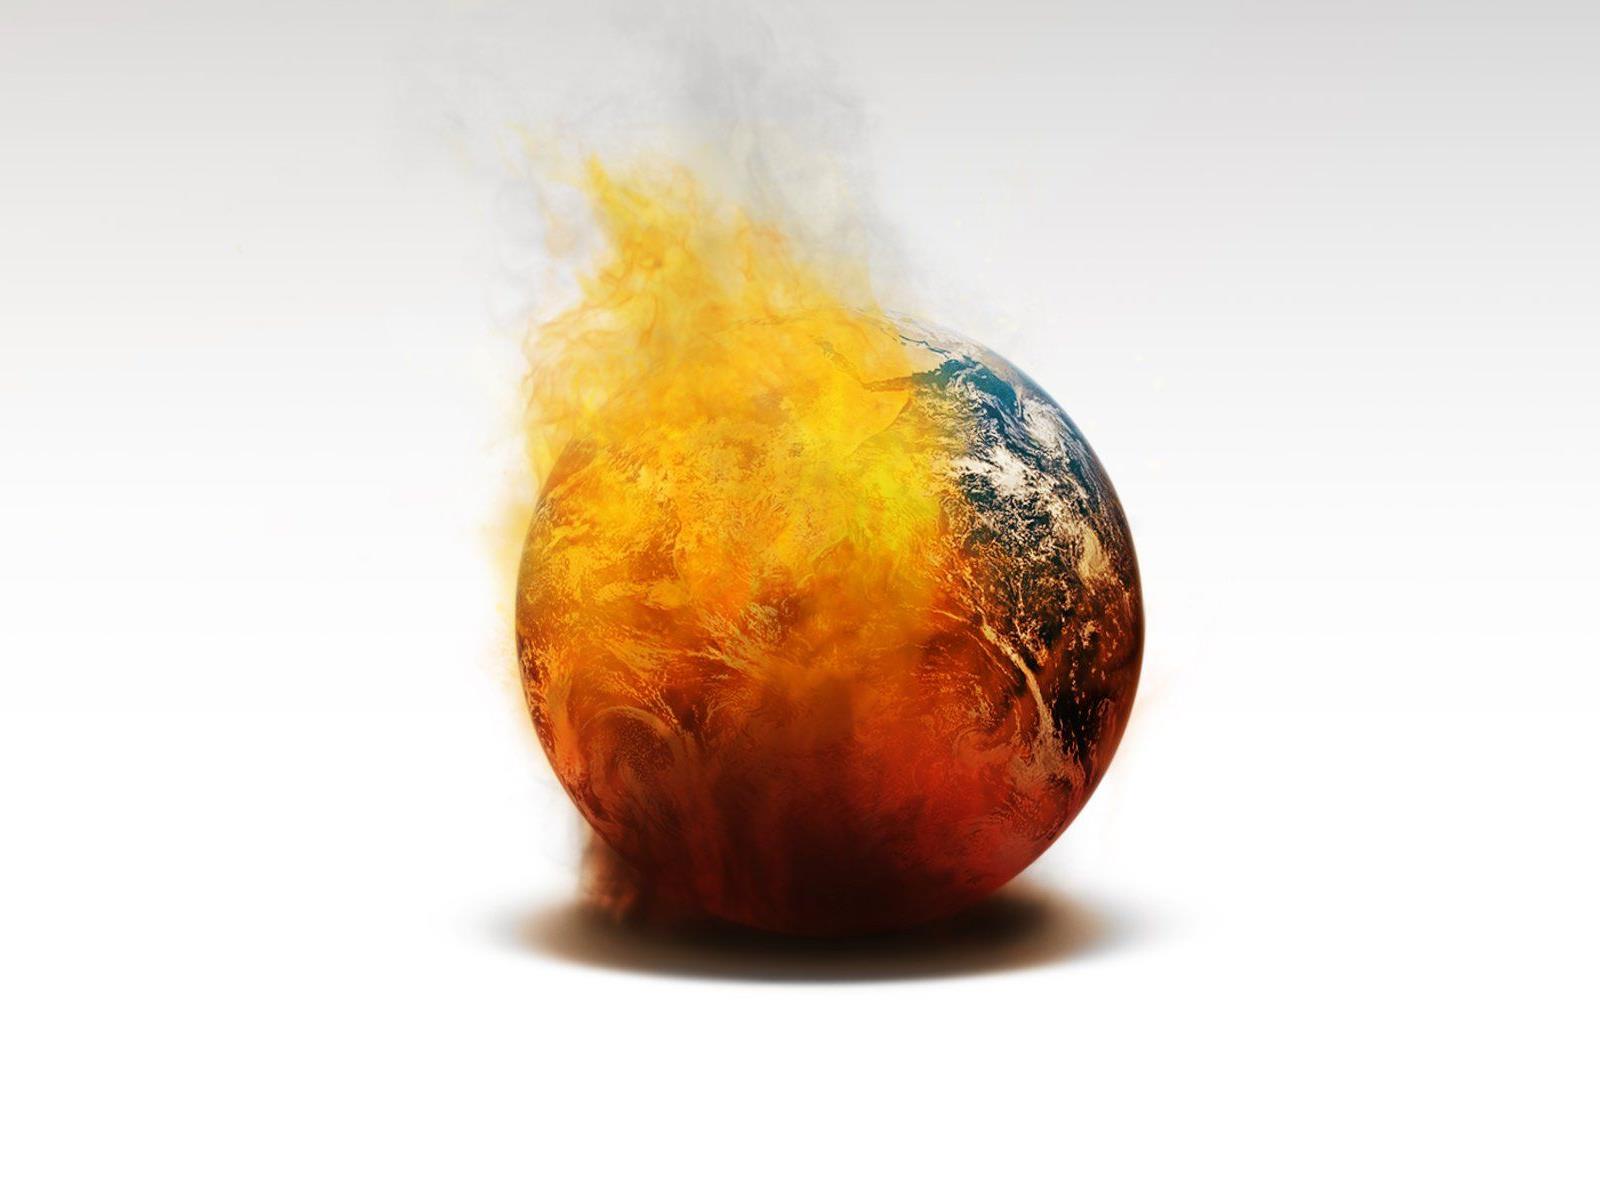 Ausgebrannt, am Limit: Welterschöpfungstag, alle natürlichen Ressourcen für heuer sind aufgebraucht.